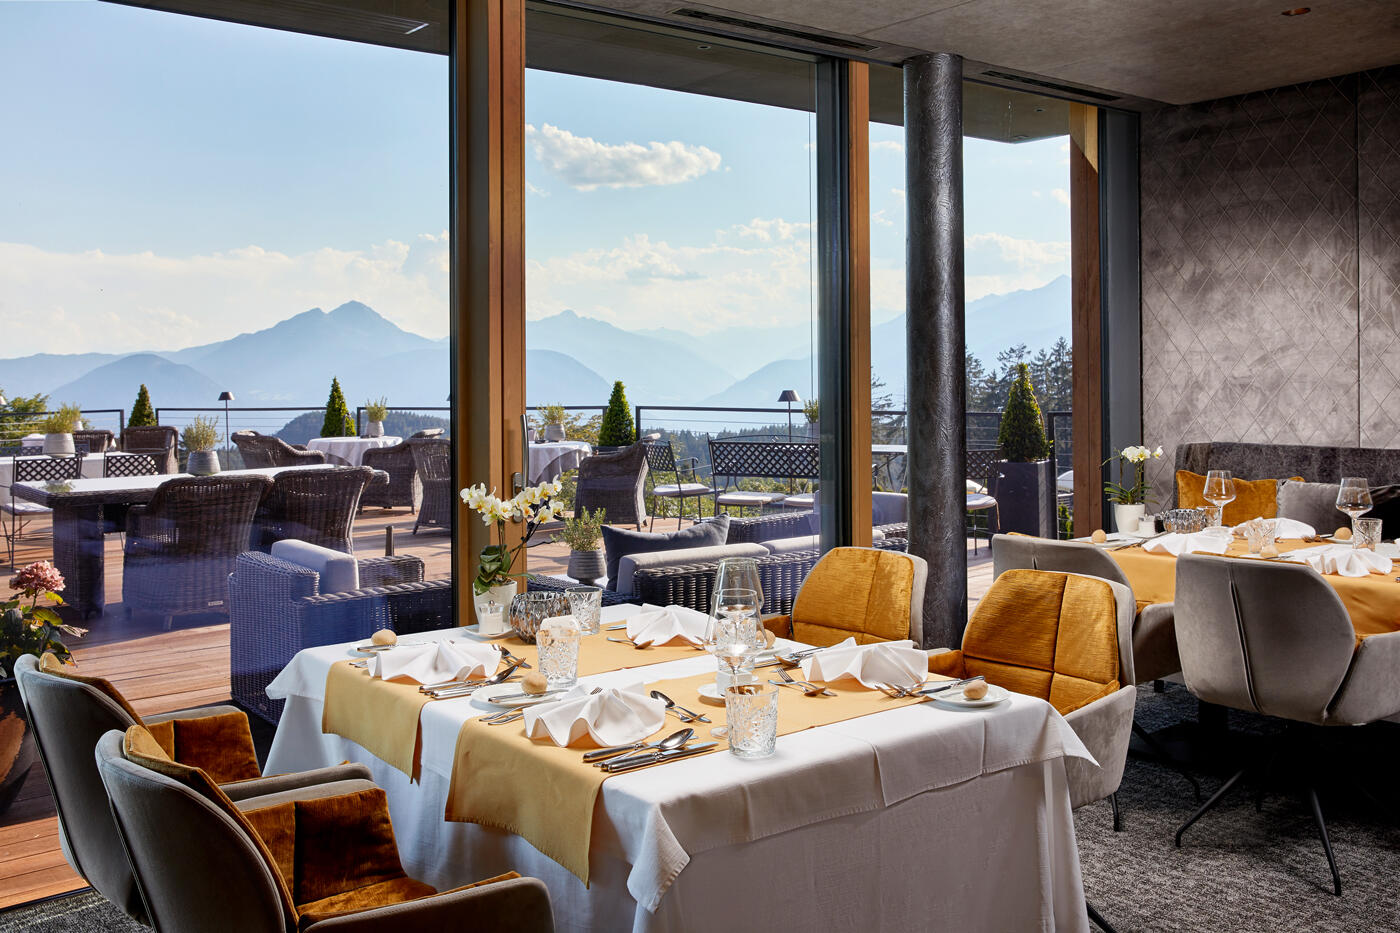 Restaurant mit großen tischen und einer Terrasse. Im Hintergrund sind die Berge